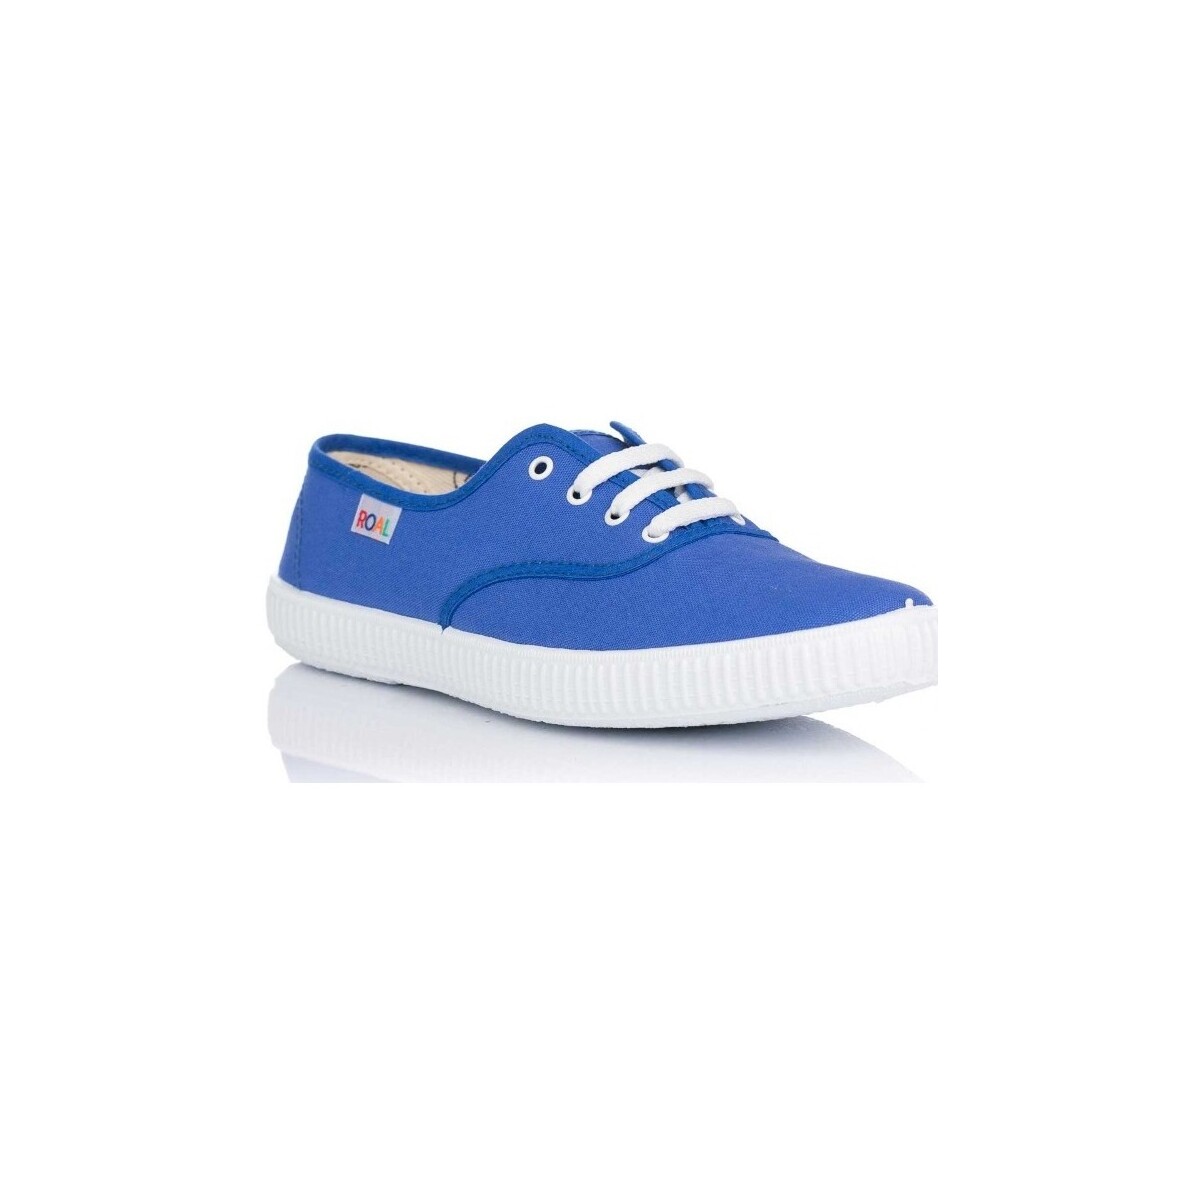 Schuhe Sneaker Low Roal 291 Blau